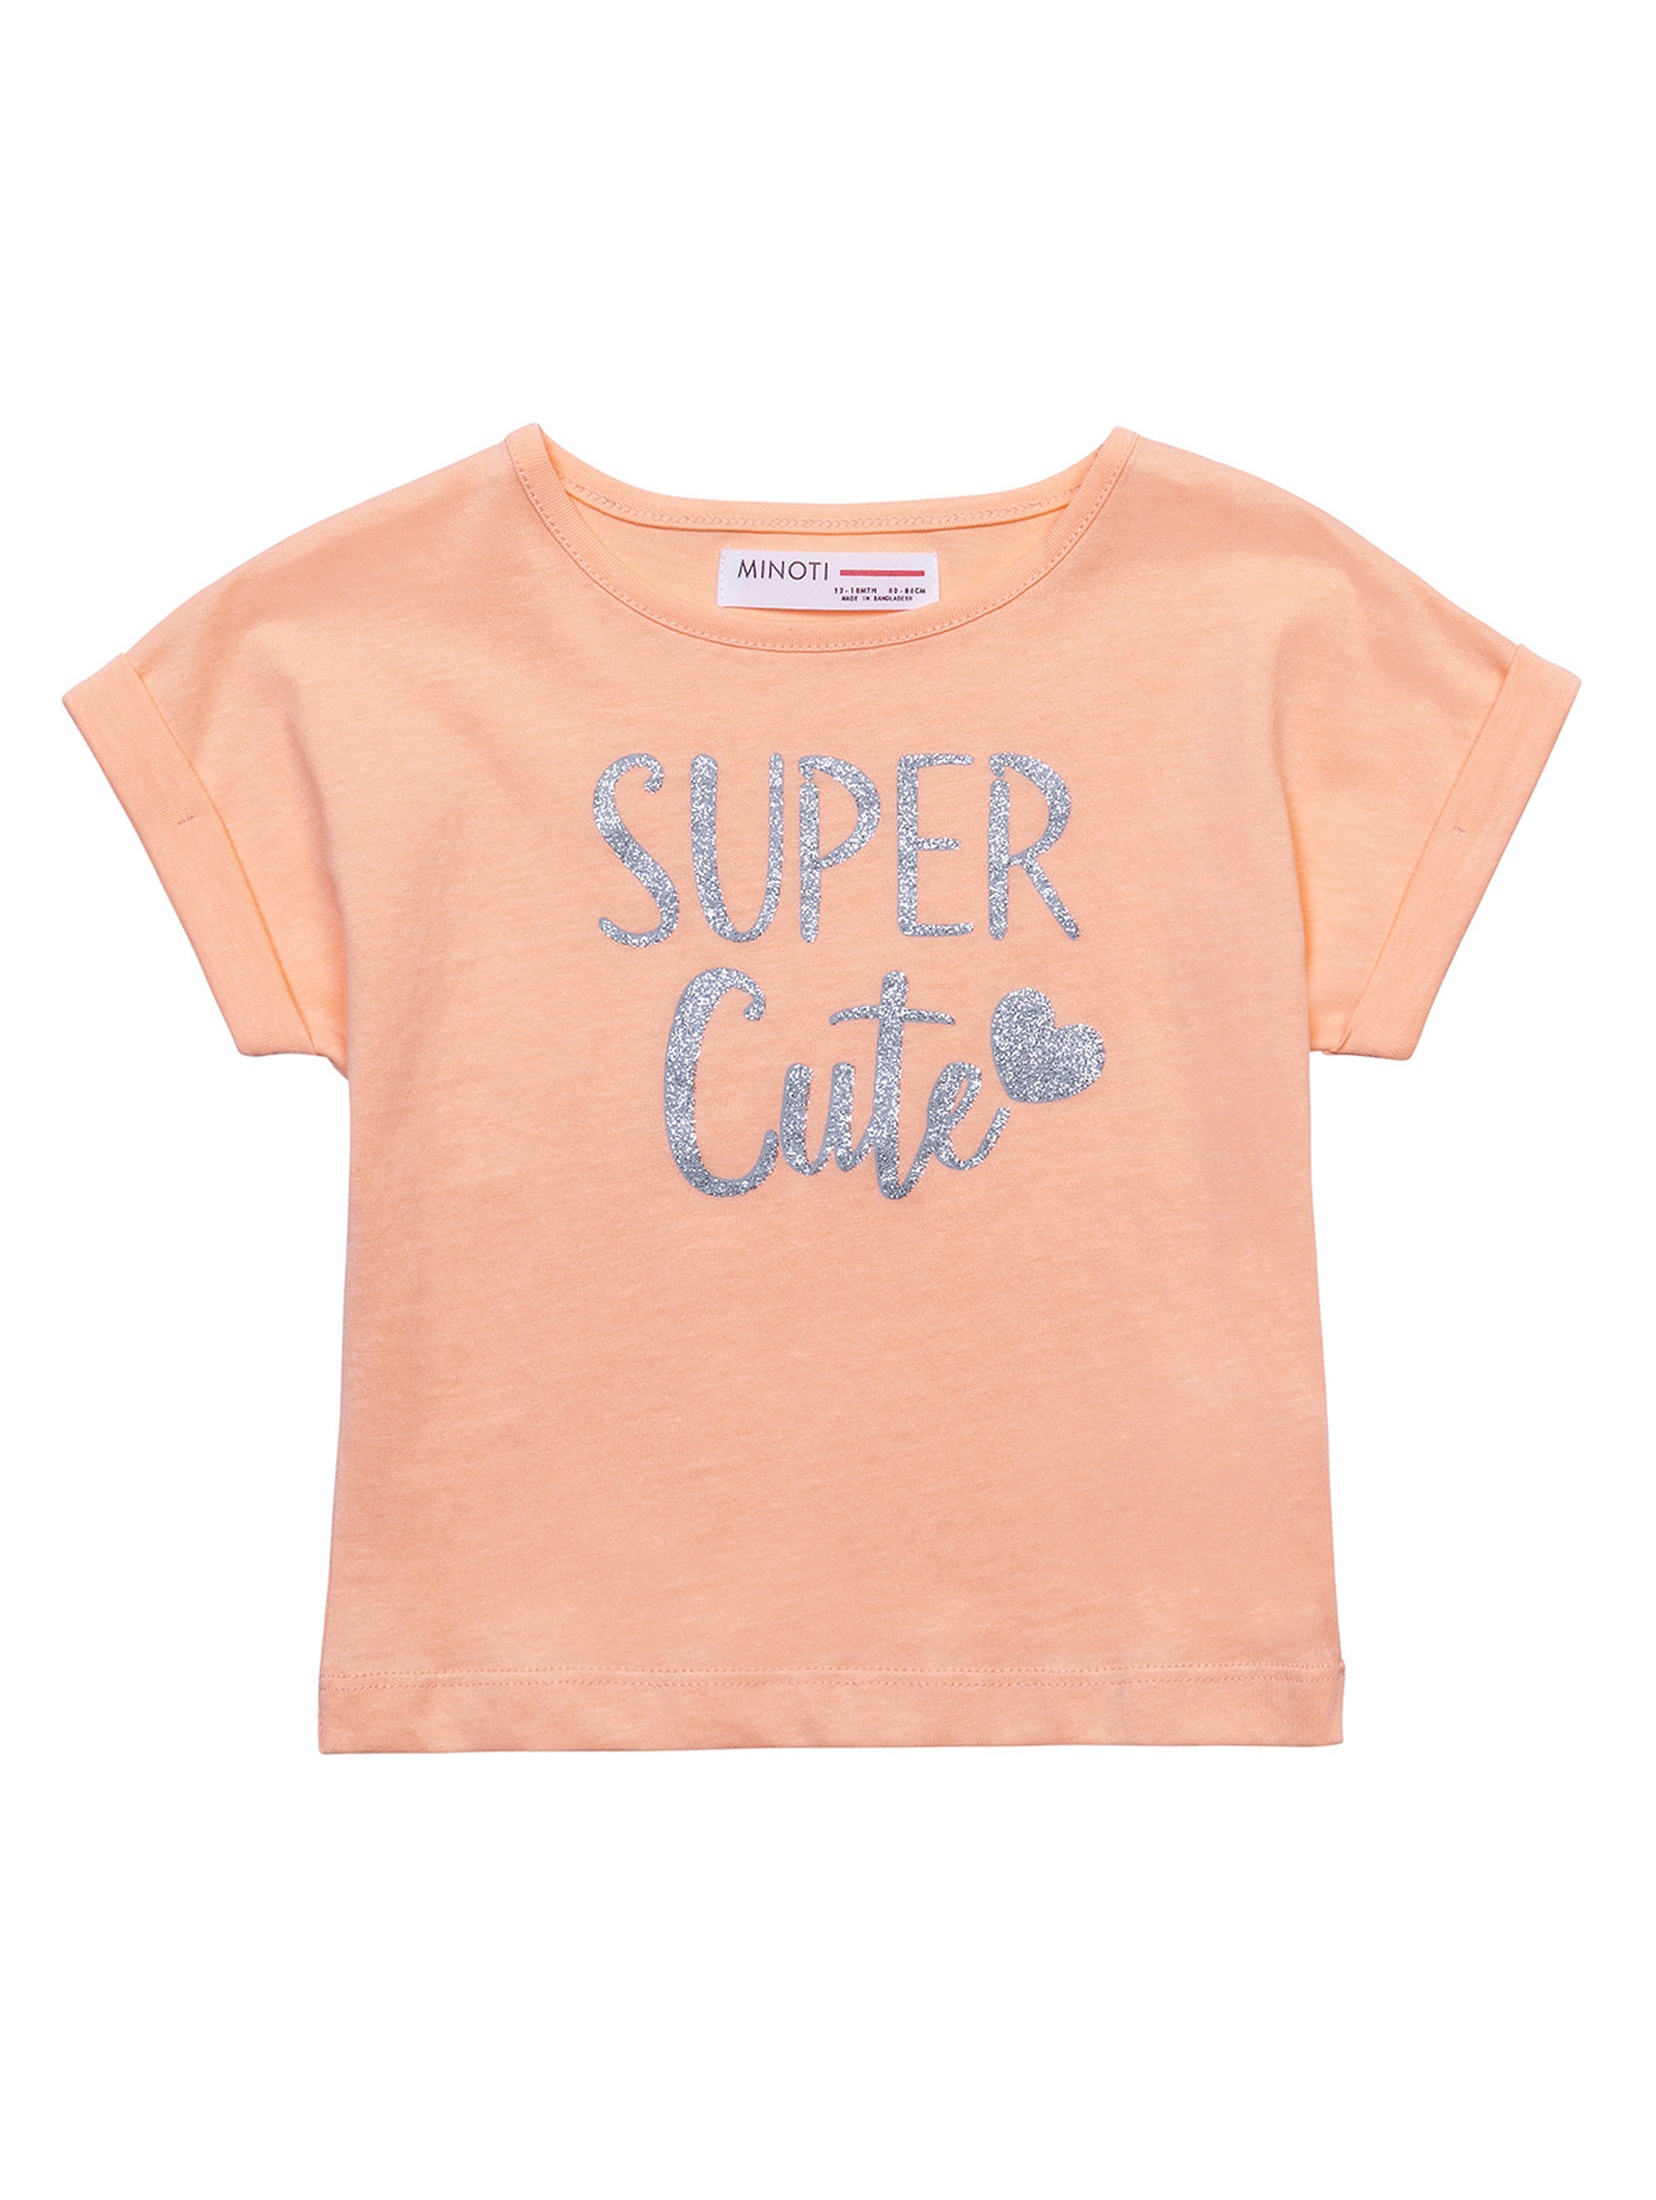 Bawełniany t-shirt pomarańczowy niemowlęcy- Super Cute